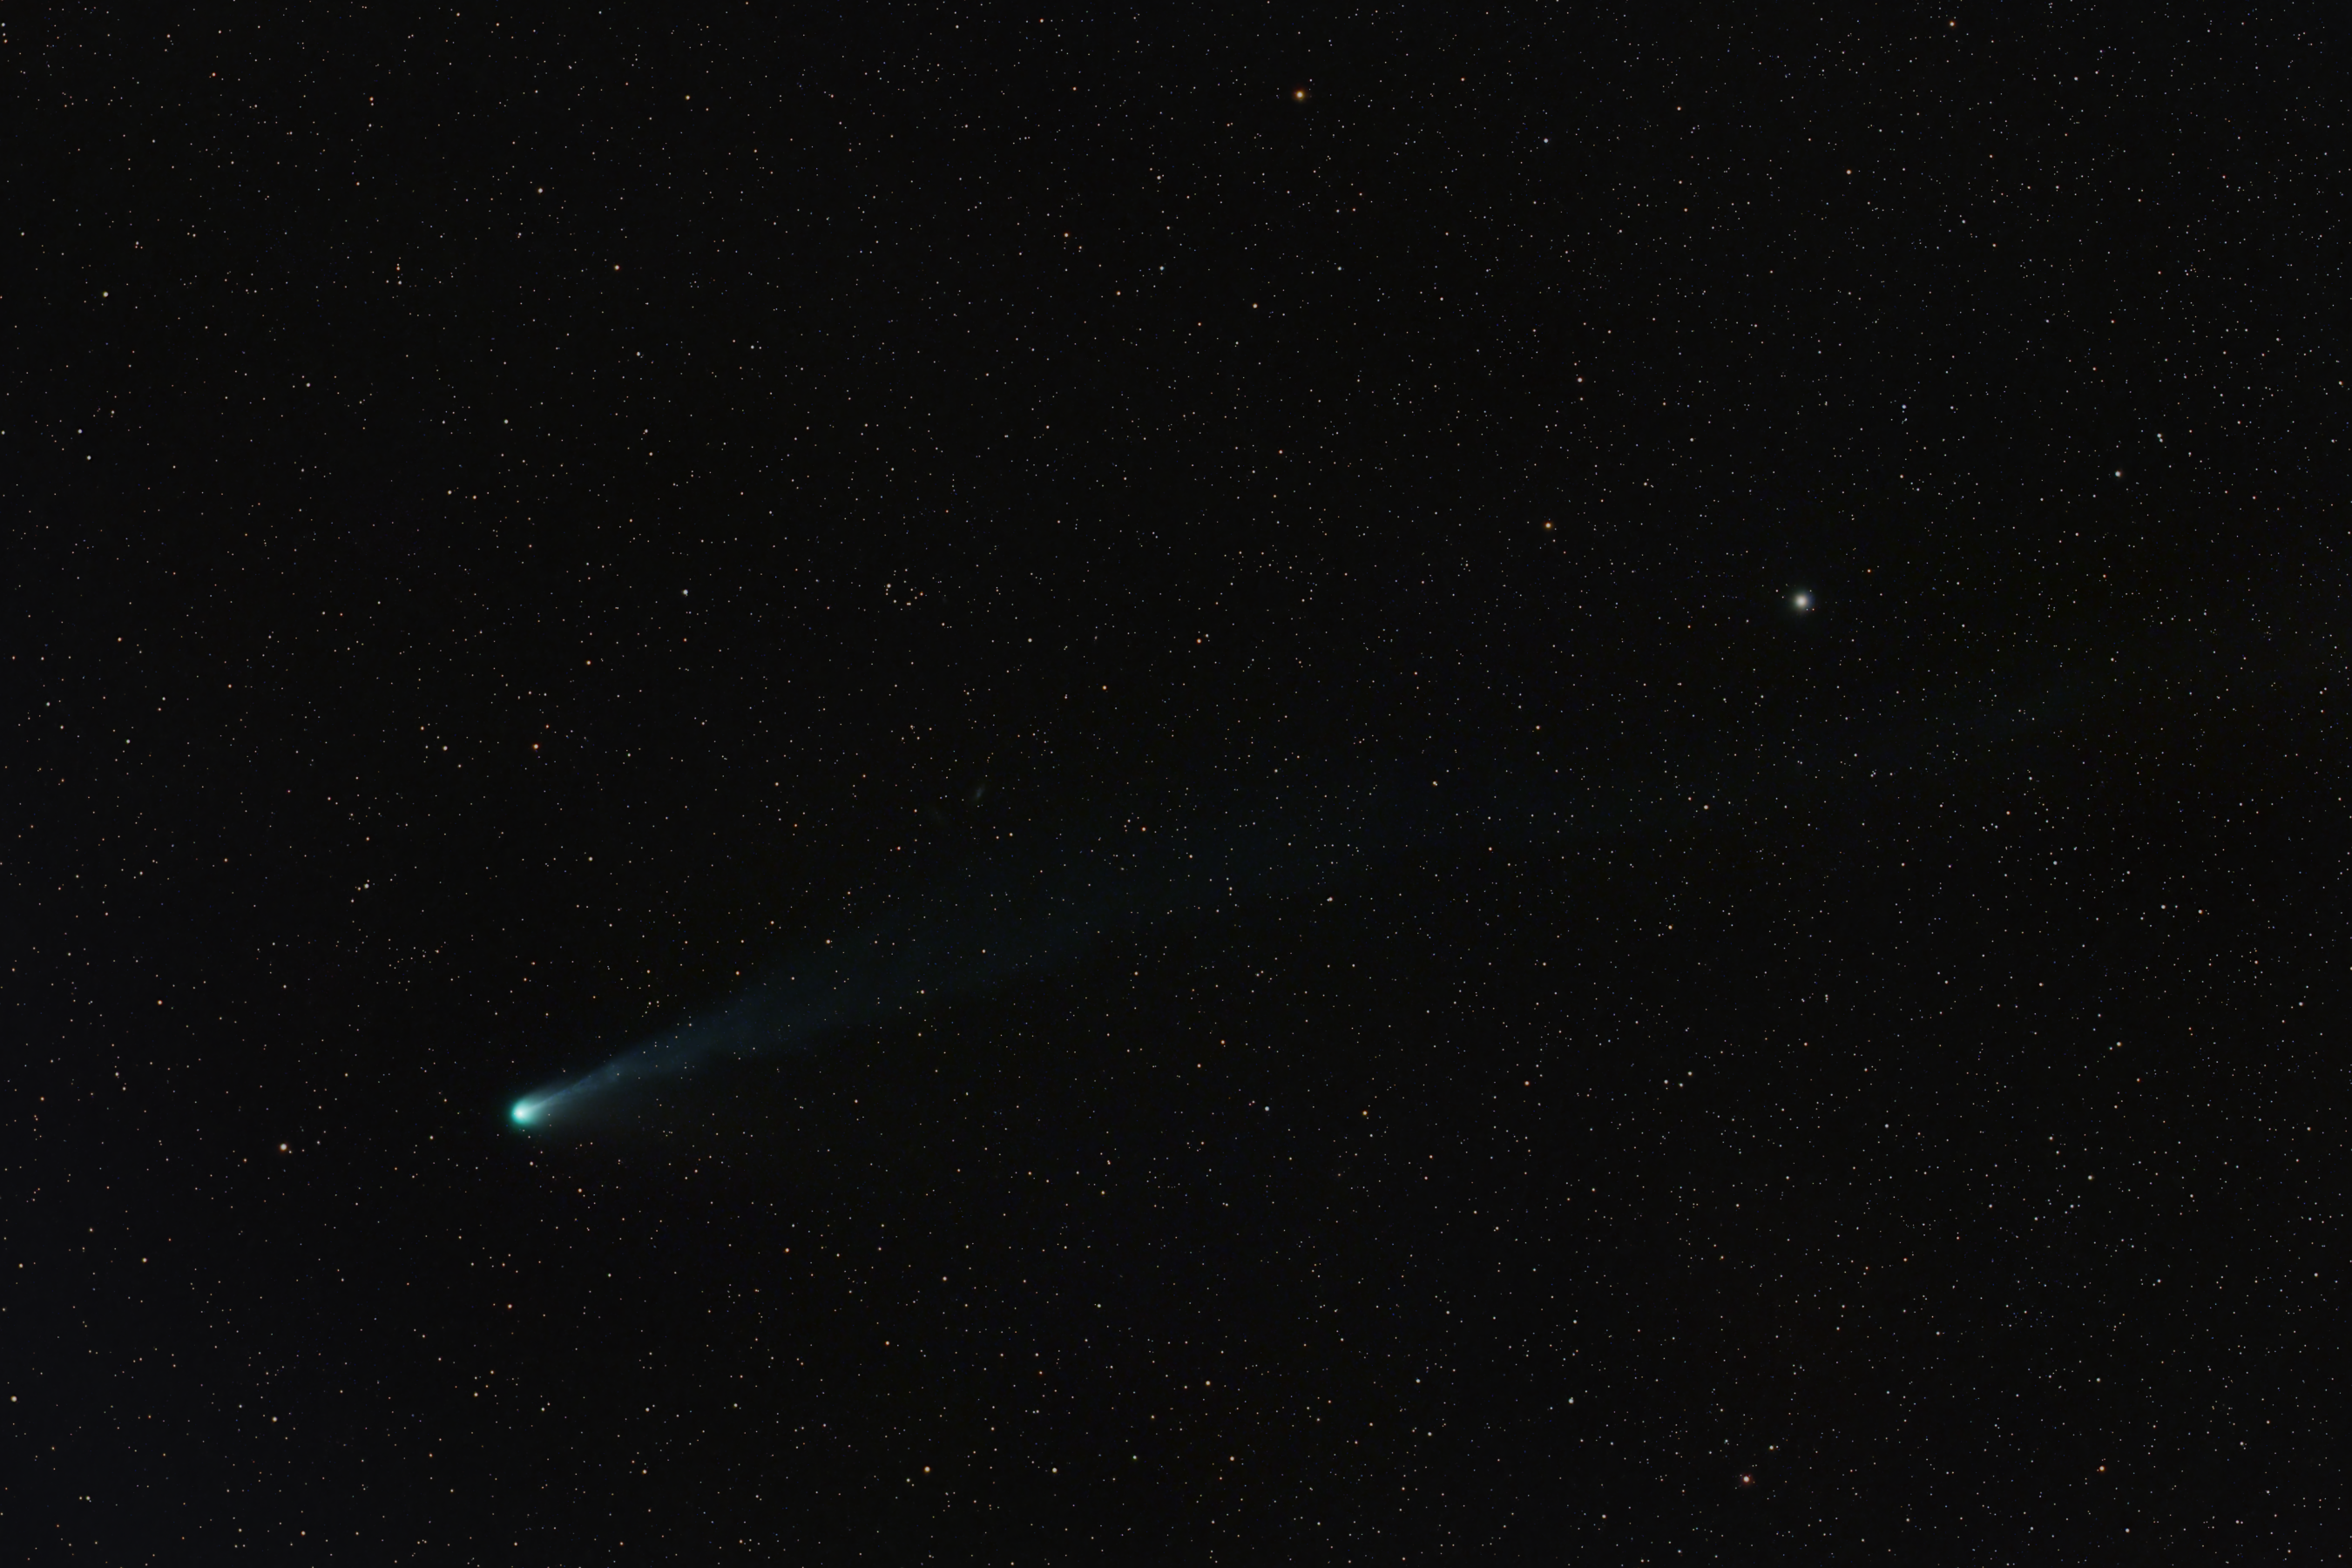 Comet 12P